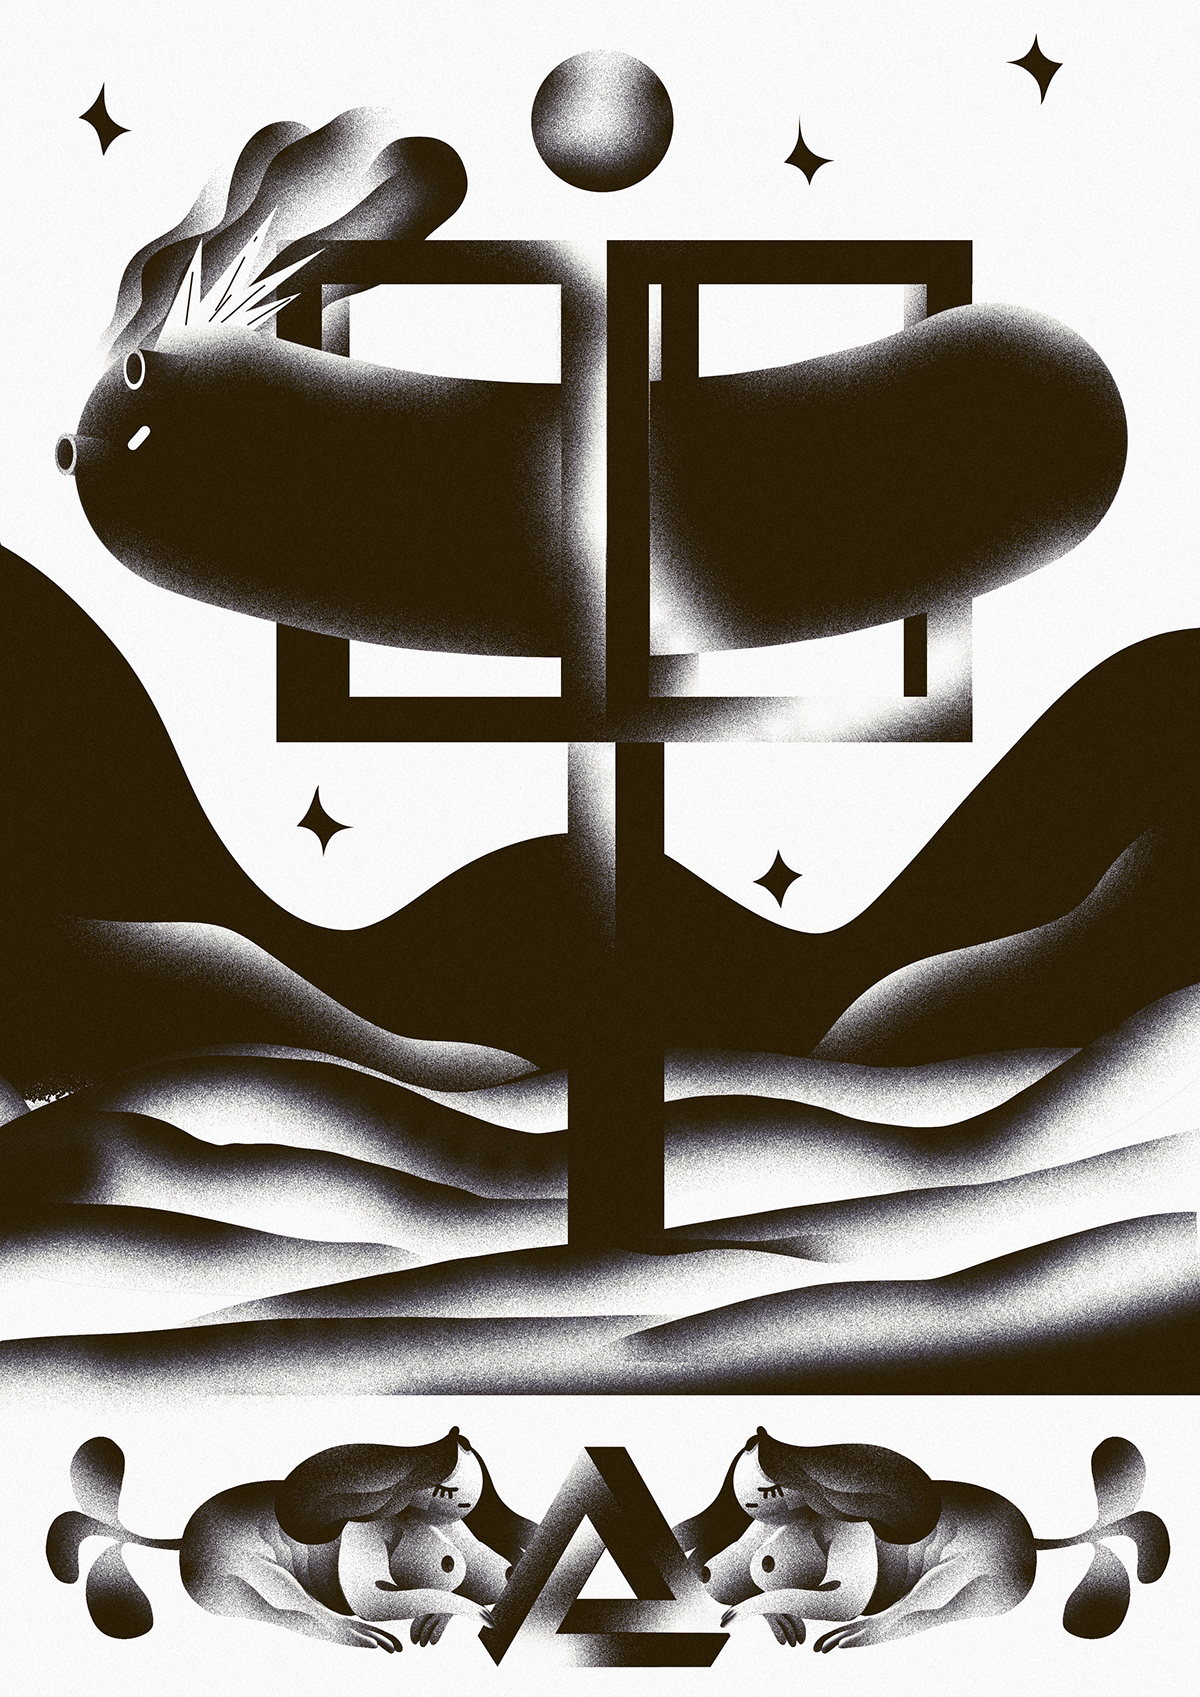 poster fantasy artwork digital painting surreal Mystic esoteric spirit Personal Work graphic design 